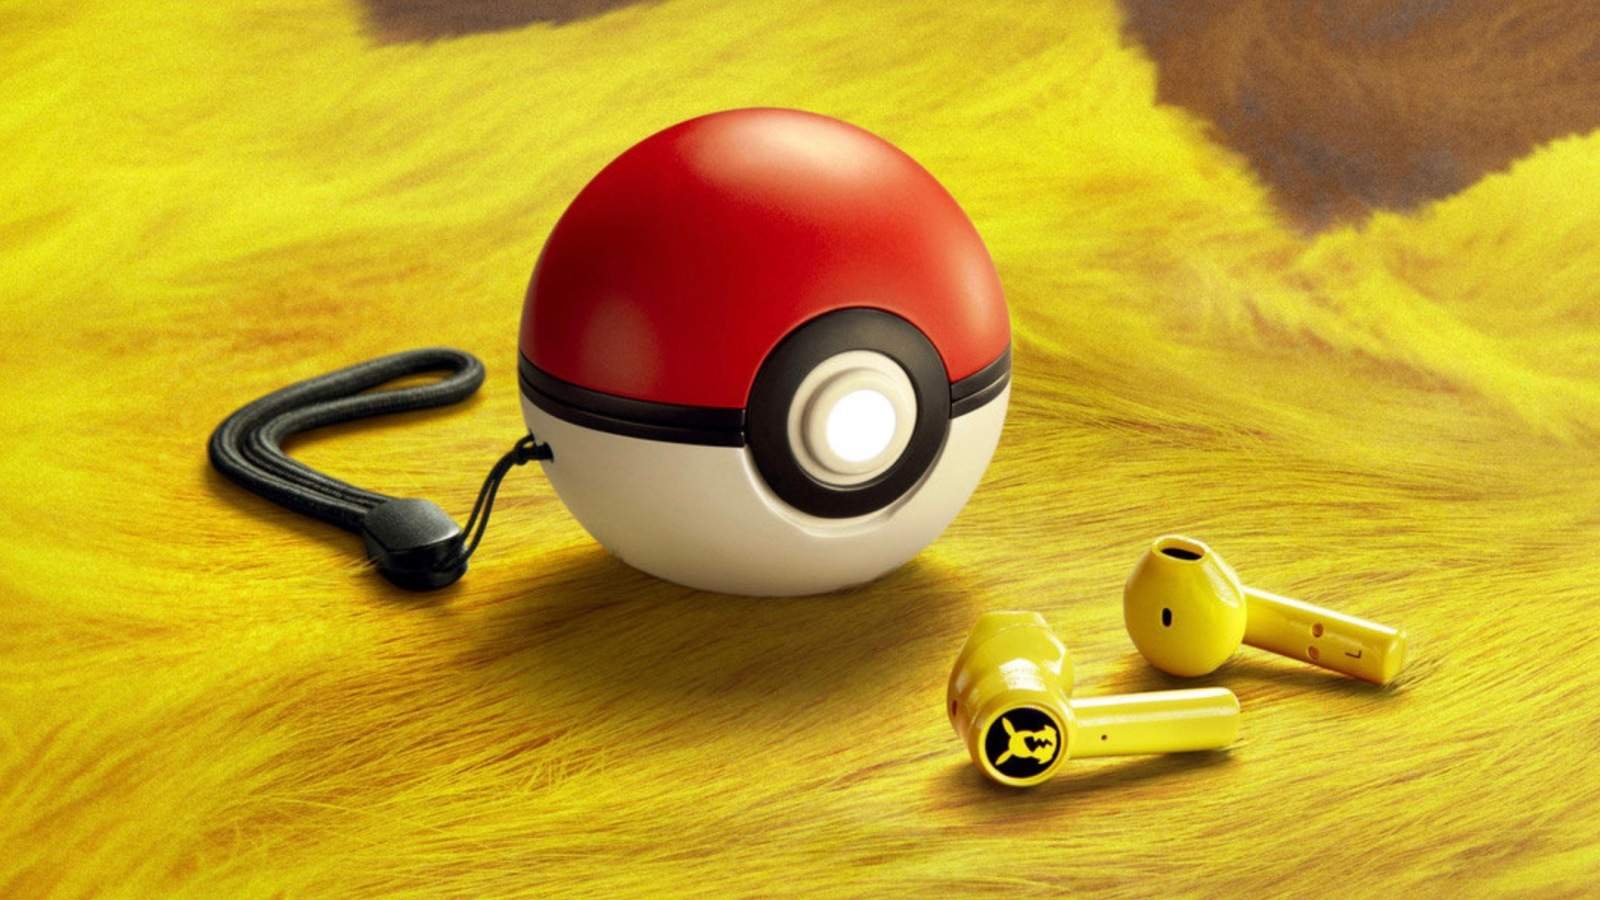 Los auriculares inalámbricos con temática de Pikachu de Razer se cargan en una pokebola